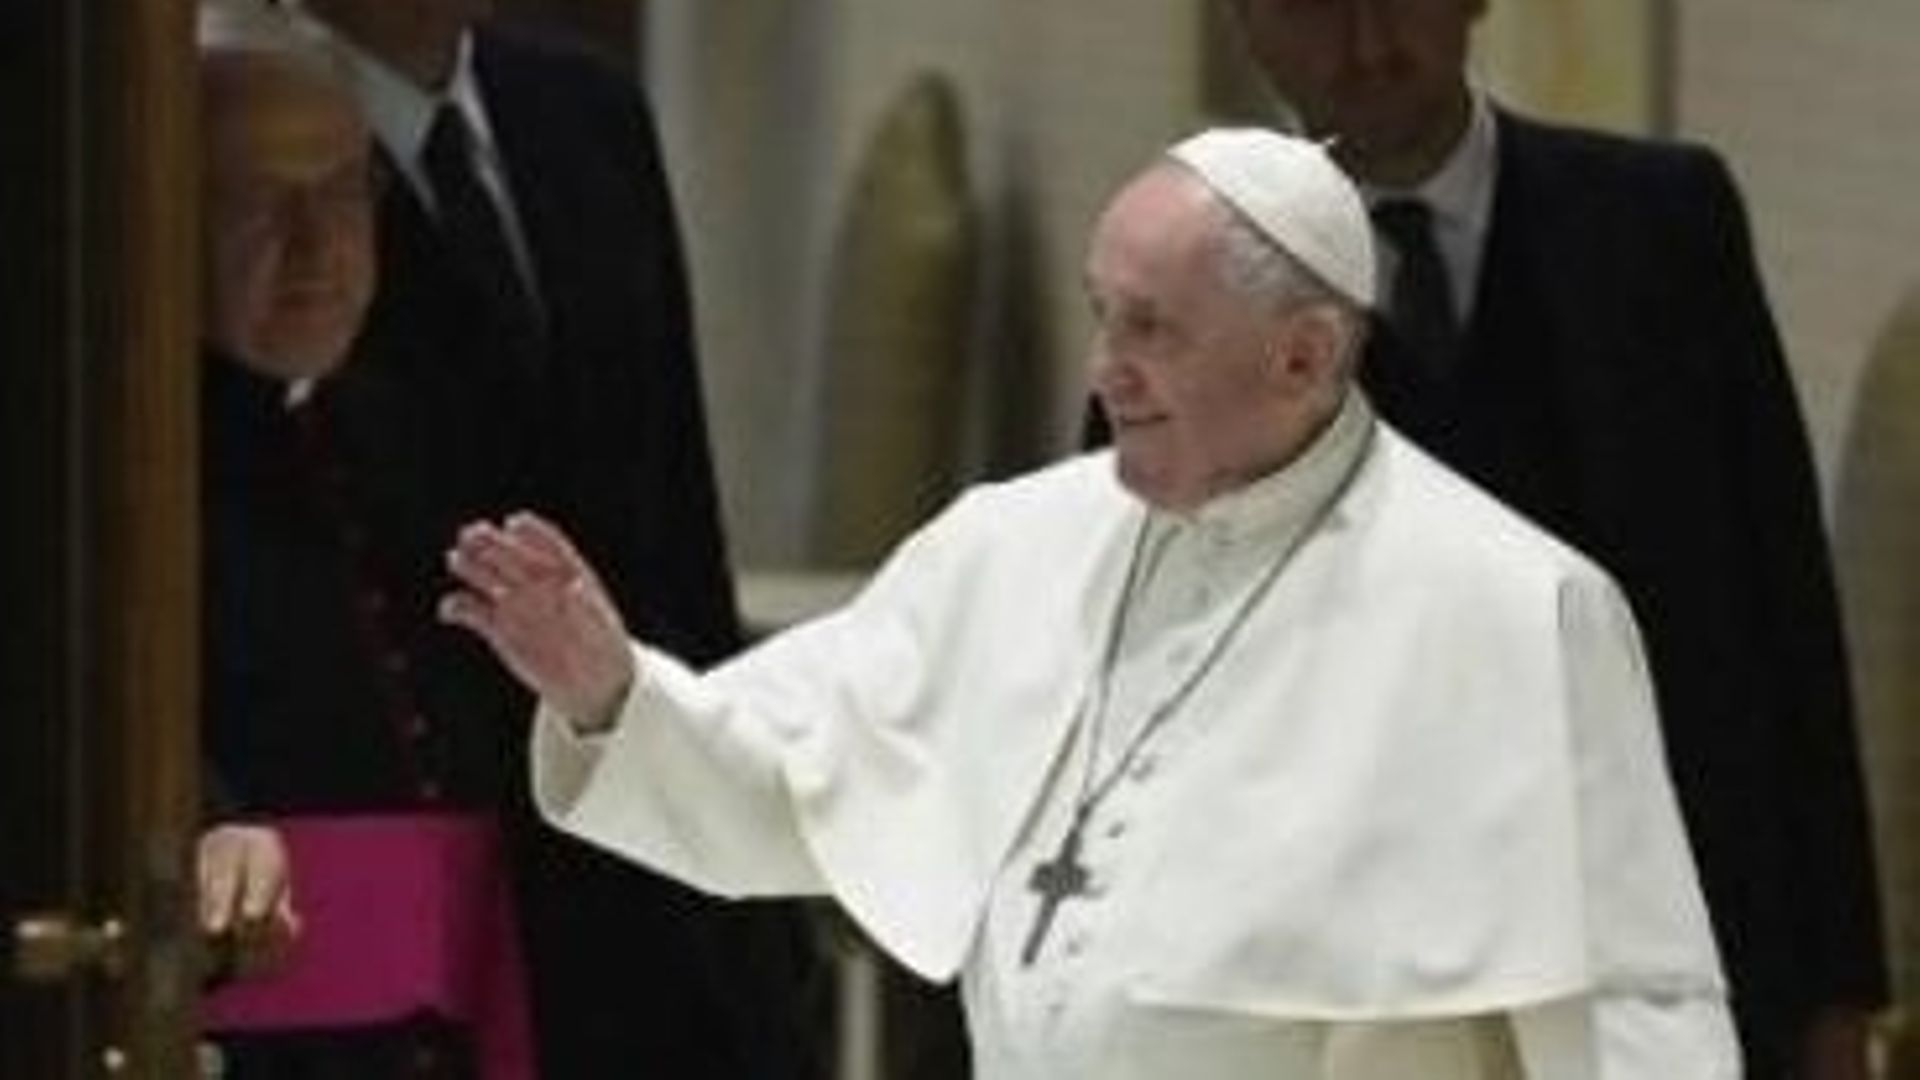 Violences sexuelles: le pape "disponible" pour recevoir les auteurs du rapport Sauvé